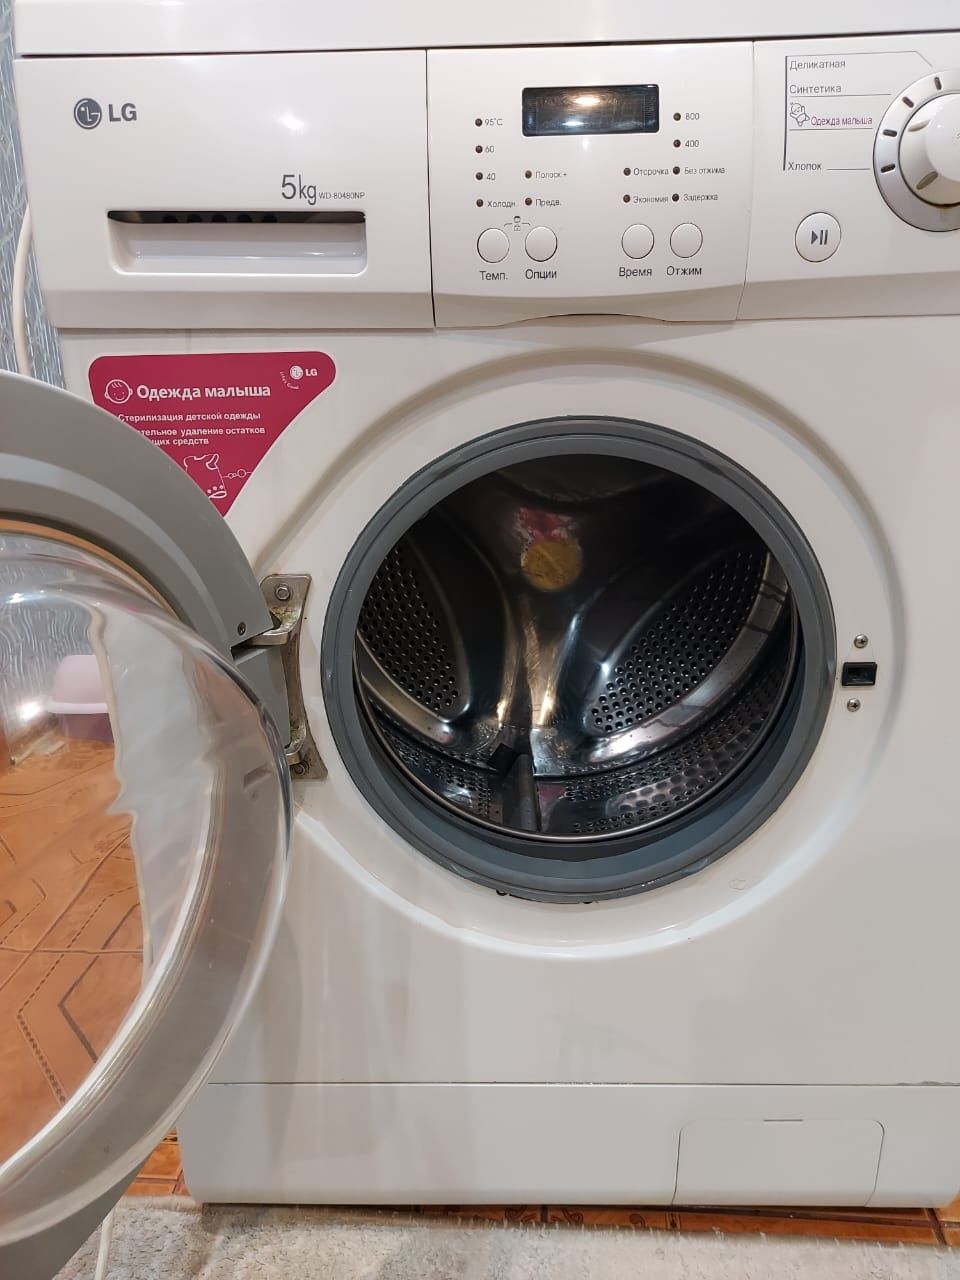 Продам стиральную машину  LG в отличном состоянии.